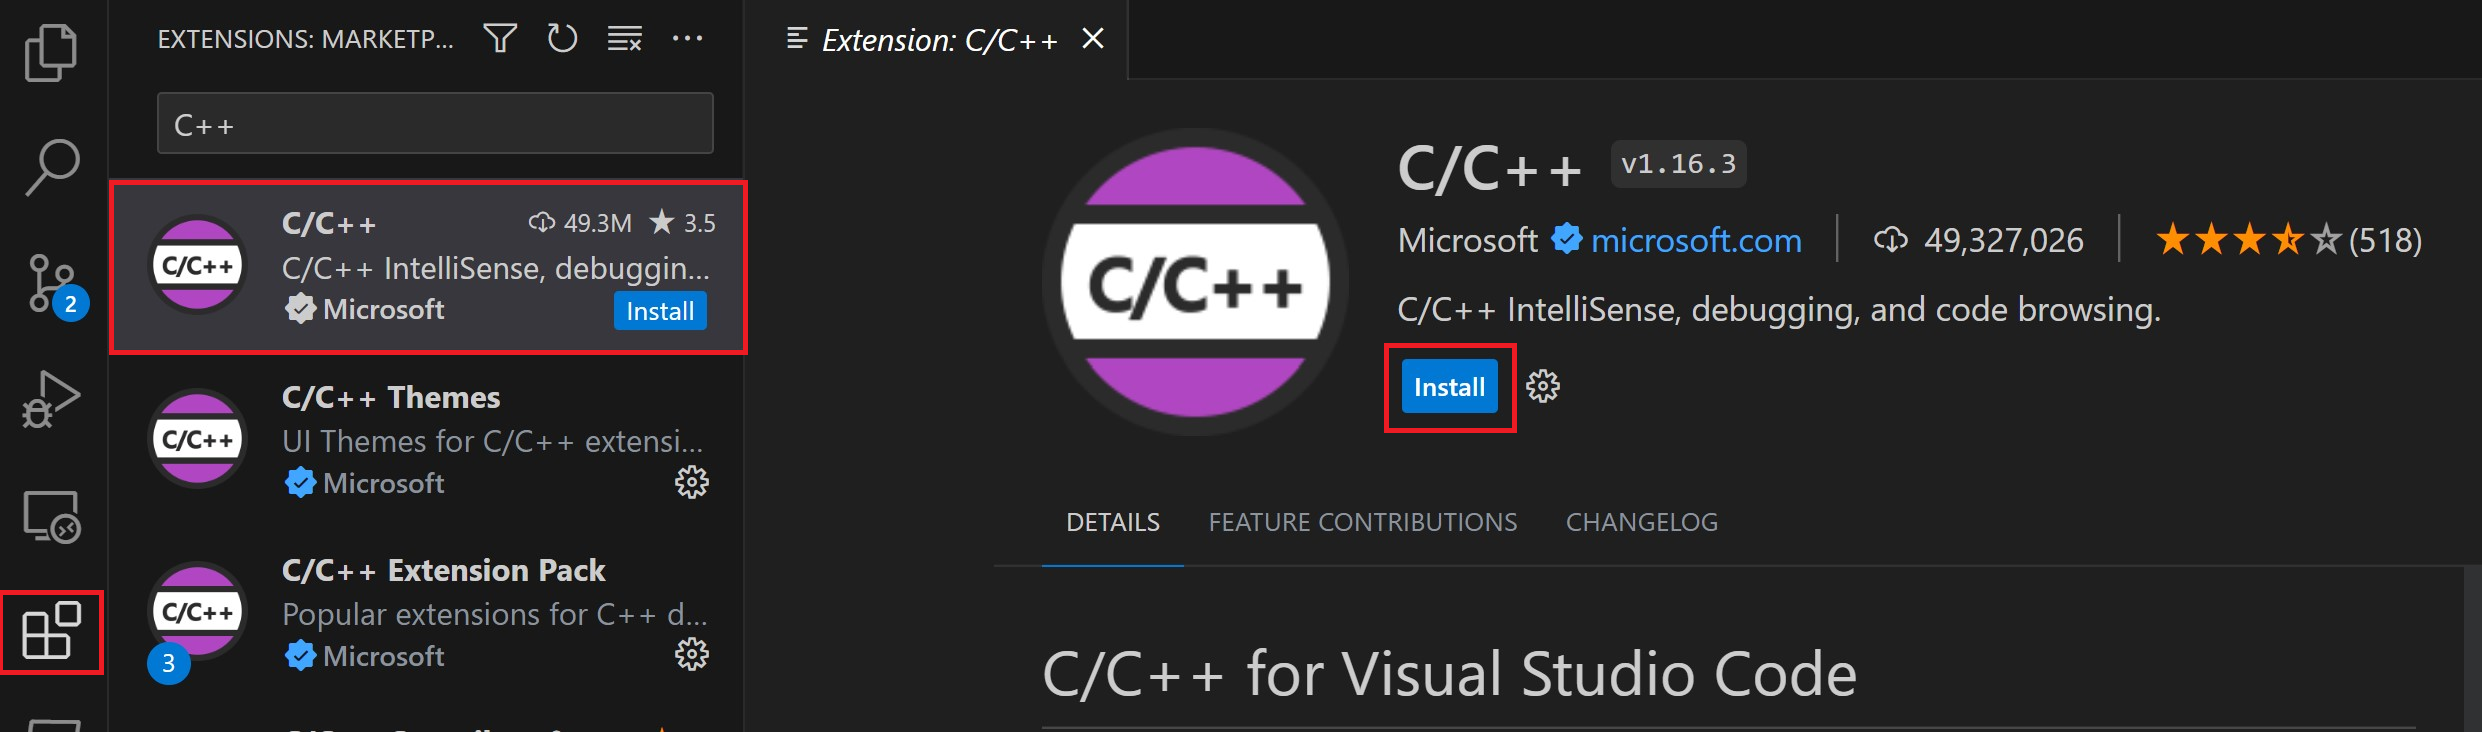 C/C++ 扩展